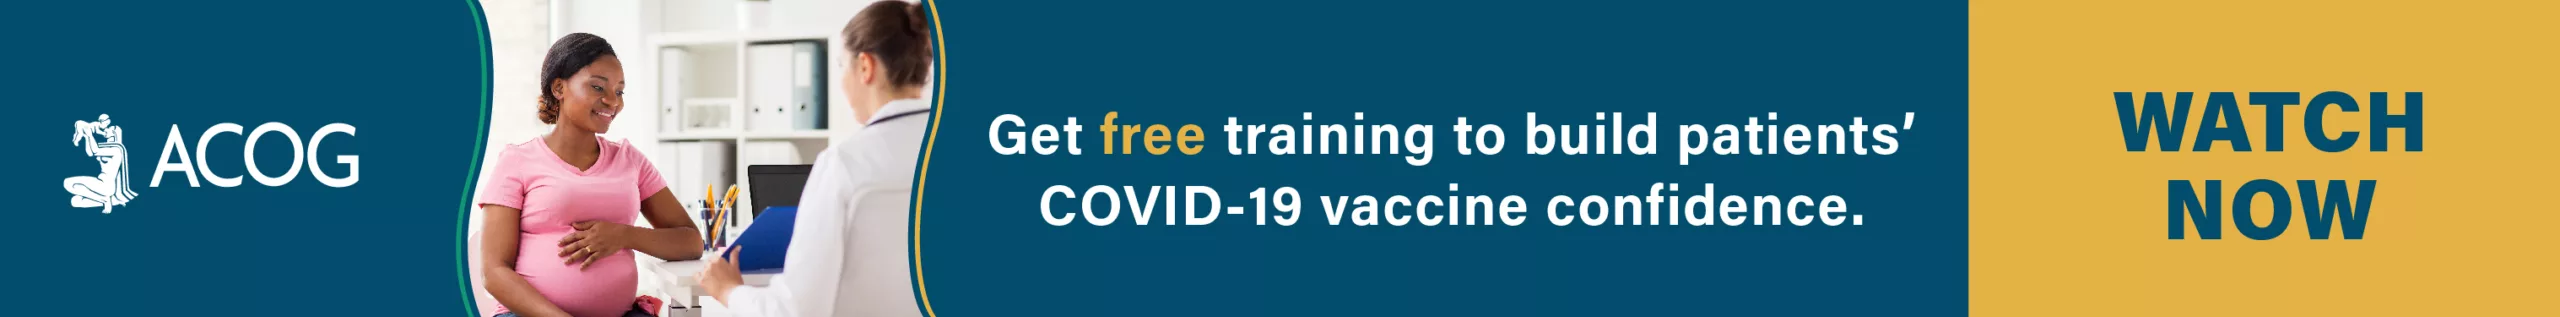 Obtenga capacitación gratuita para fomentar la confianza de los pacientes en la vacuna COVID-19. Ver ahora.